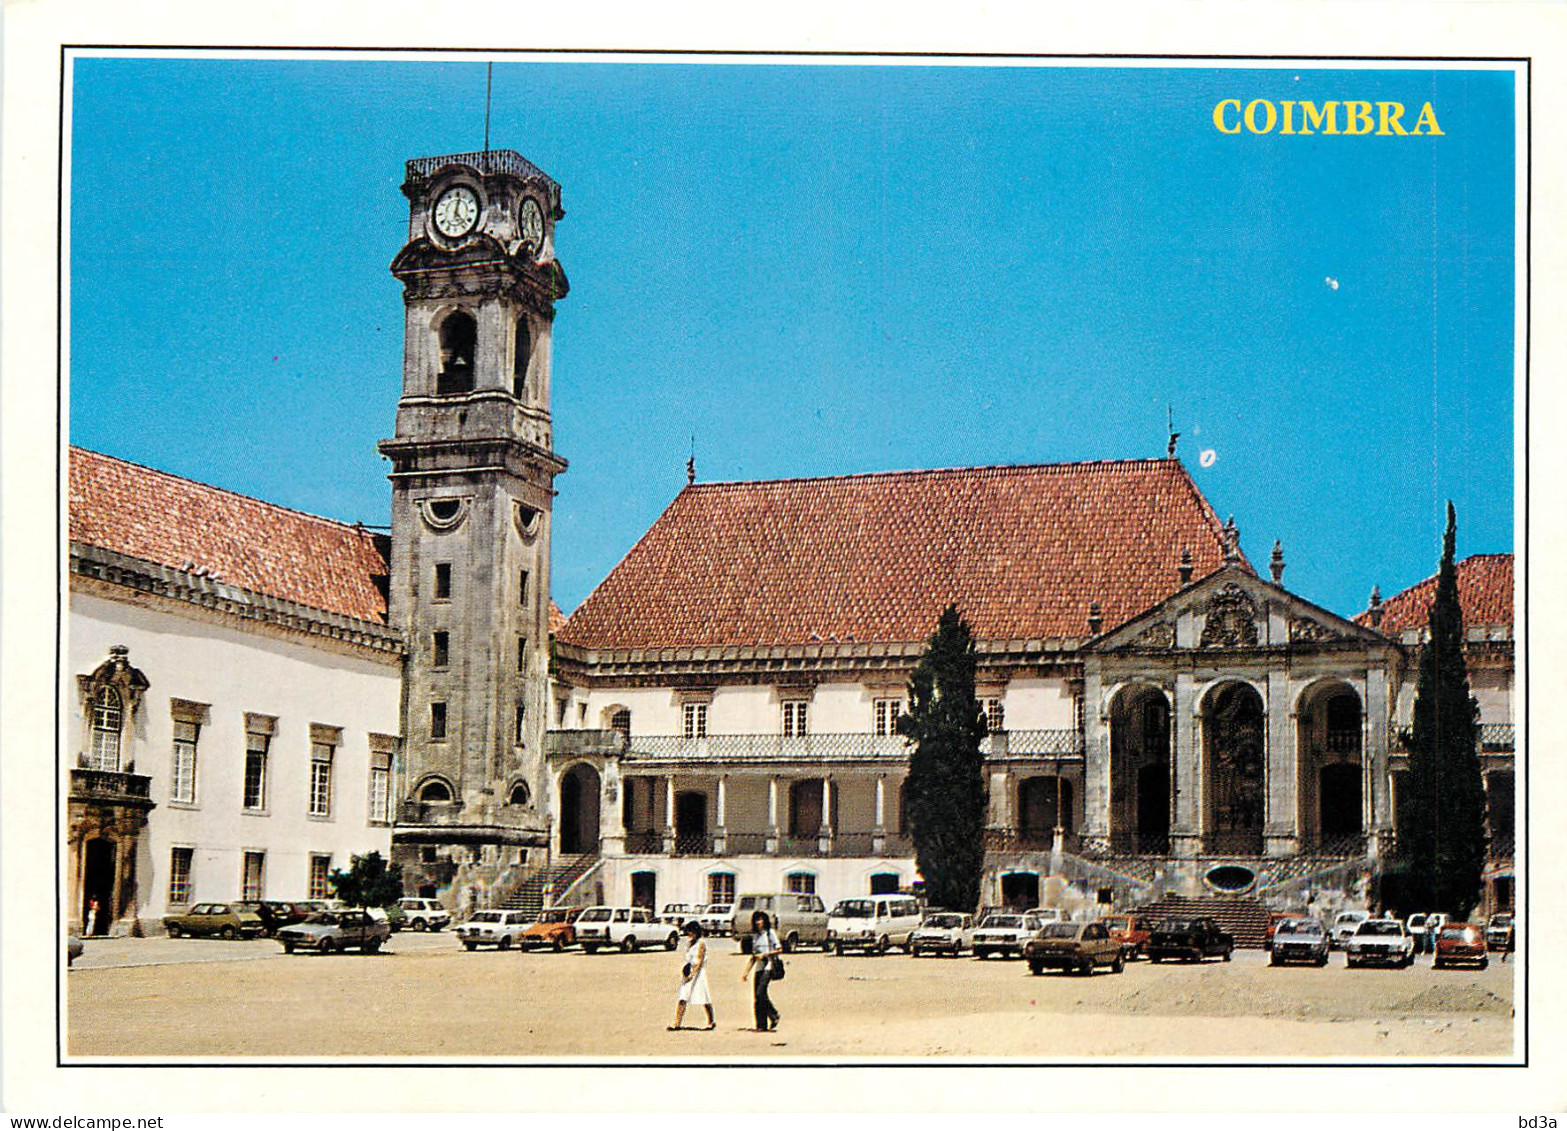 Portugal COIMBRA - Coimbra